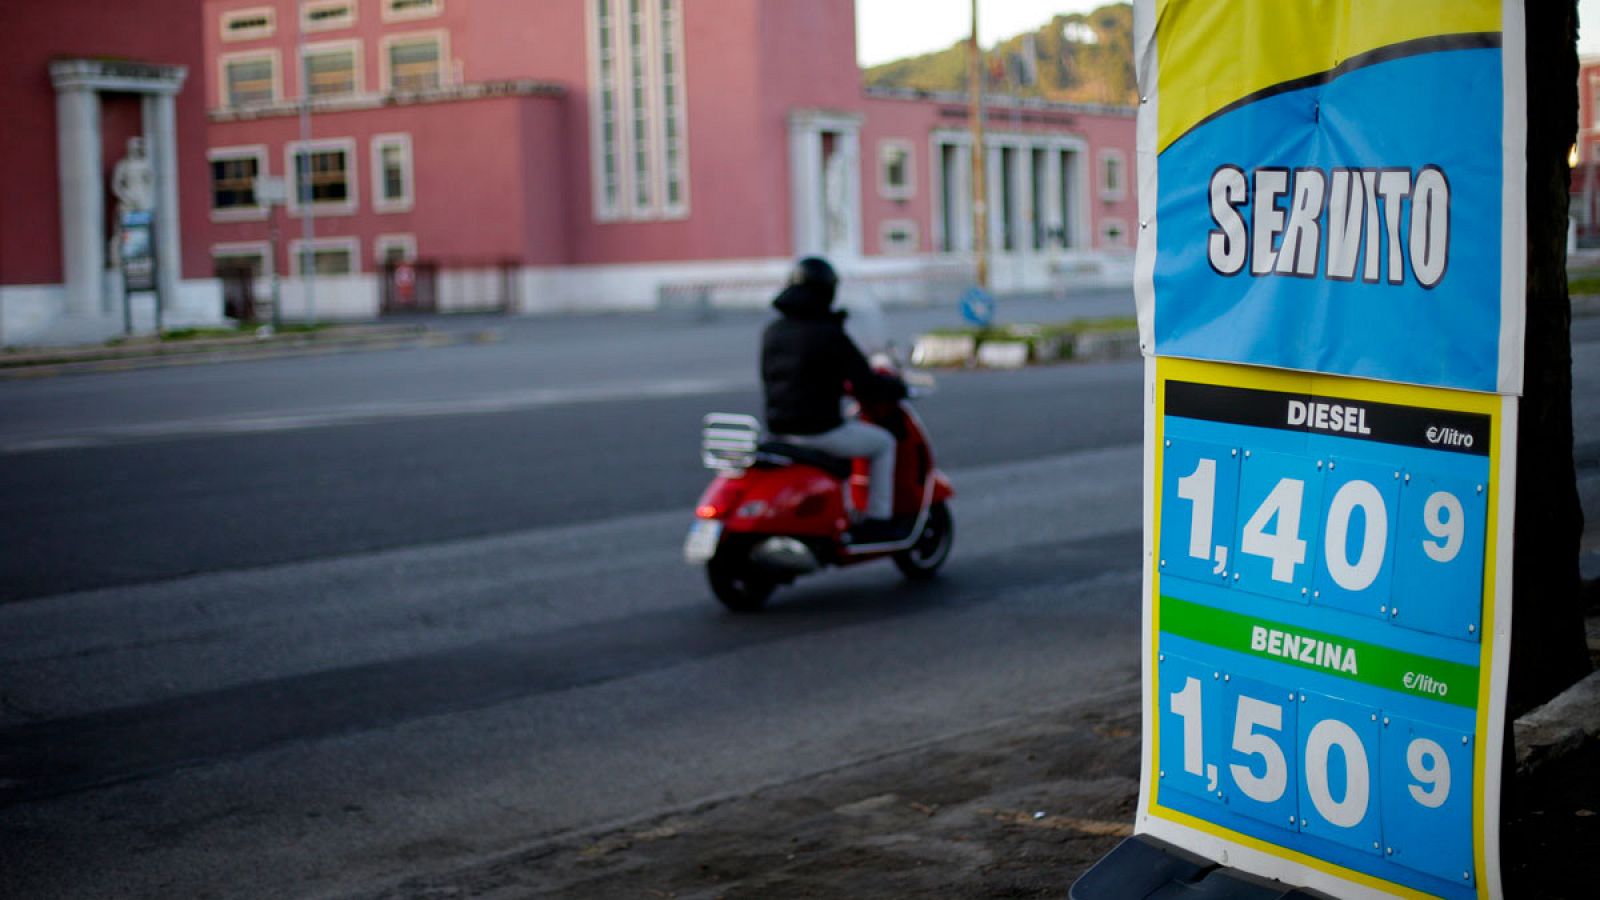 Cartel de precios en una gasolinera italiana